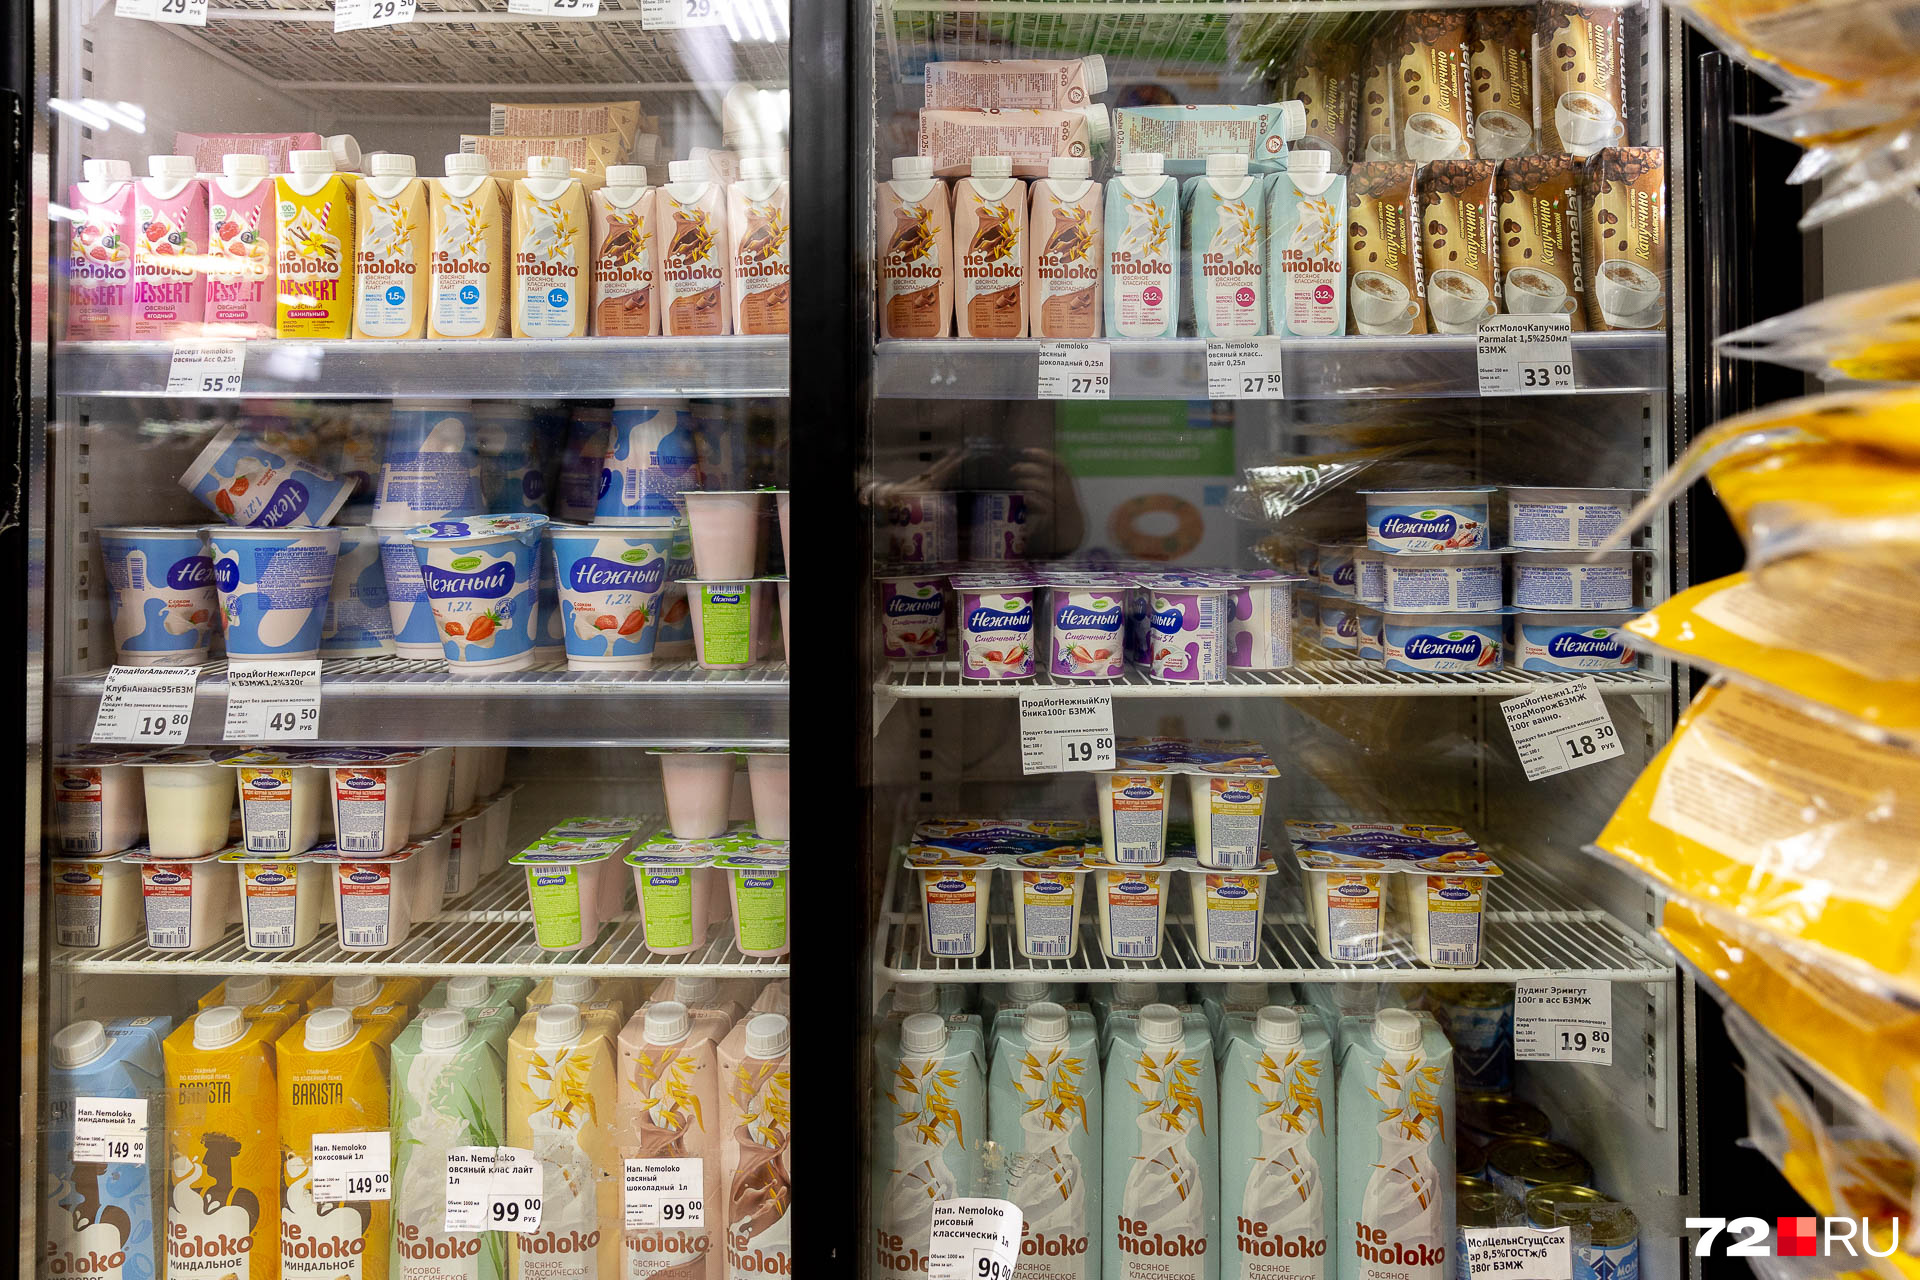 Холодильник с молочными продуктами выглядит так. Дешевле всего стоят йогурты: по 18–19 рублей за штуку